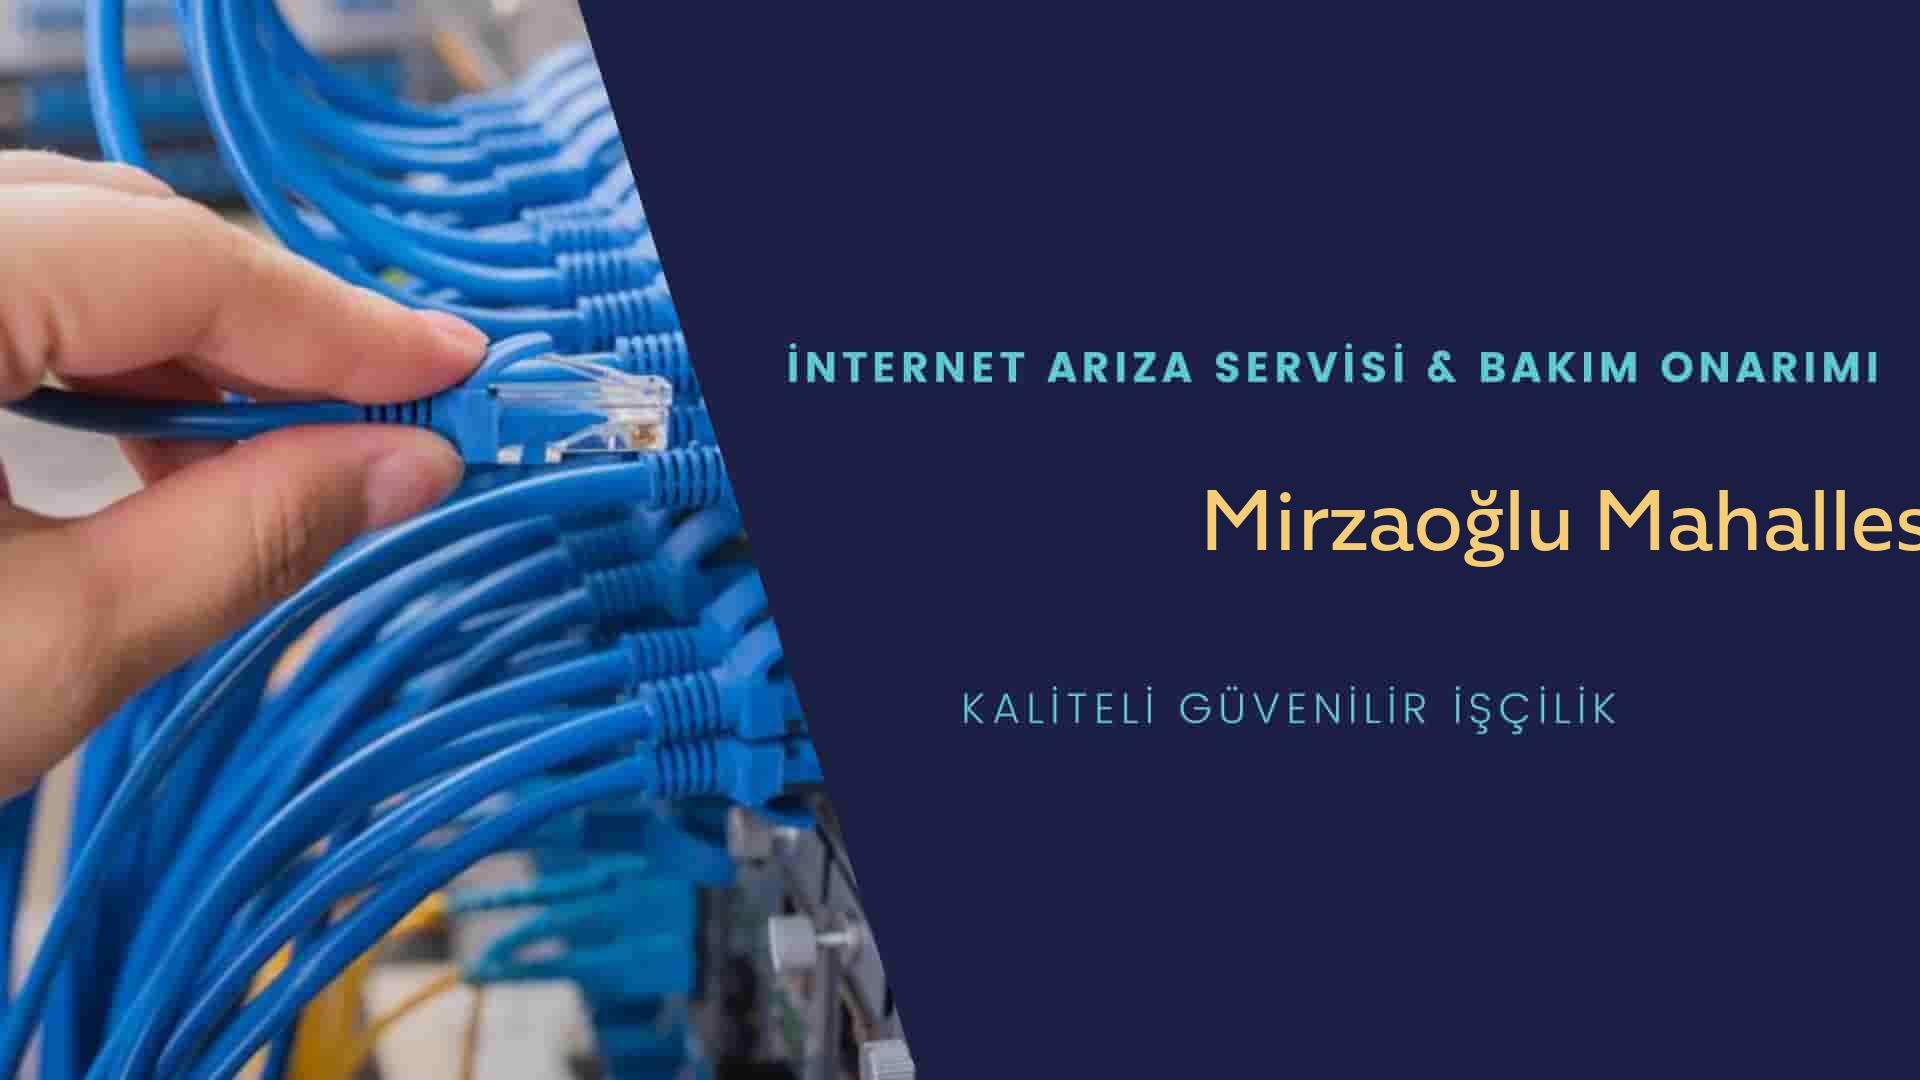 Mirzaoğlu Mahallesi internet kablosu çekimi yapan yerler veya elektrikçiler mi? arıyorsunuz doğru yerdesiniz o zaman sizlere 7/24 yardımcı olacak profesyonel ustalarımız bir telefon kadar yakındır size.